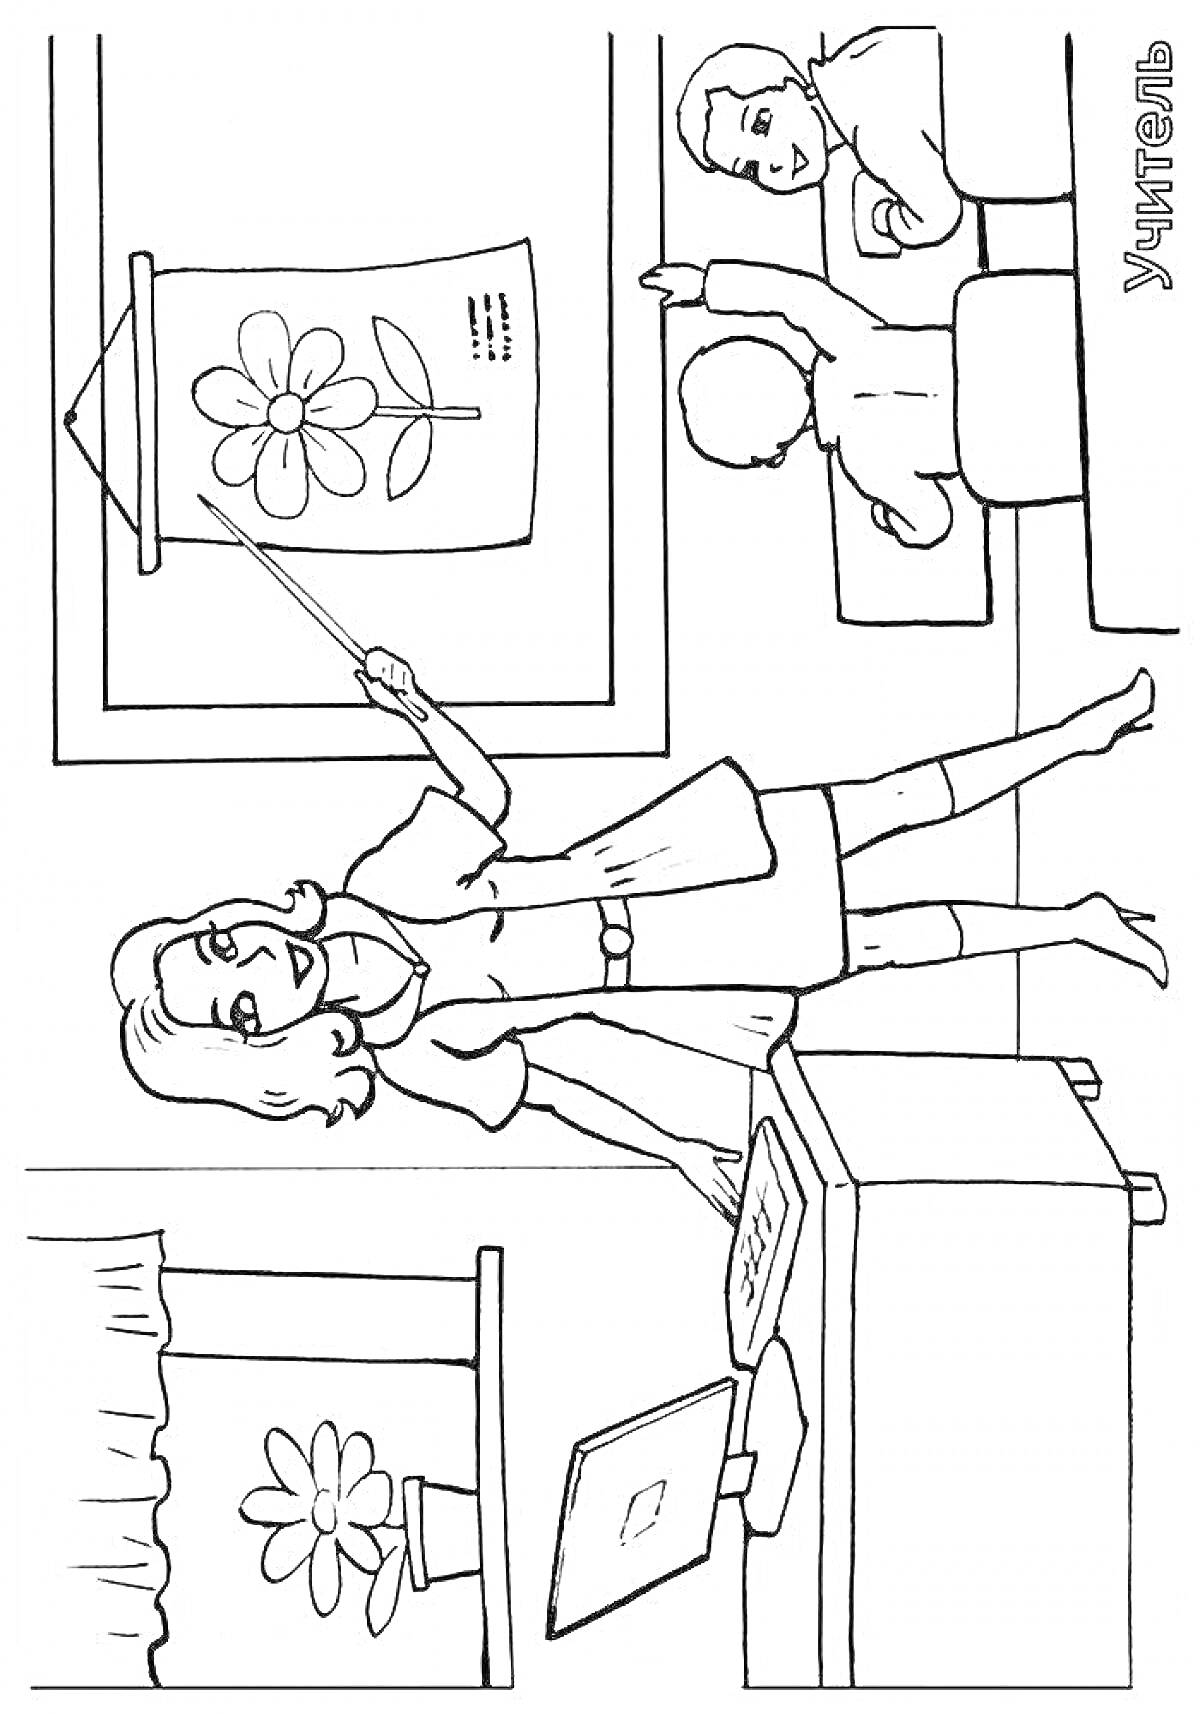 Учитель у доски, два ученика-за партами, плакат с цветком, окно с цветком, рабочий стол с ноутбуком и книгой.